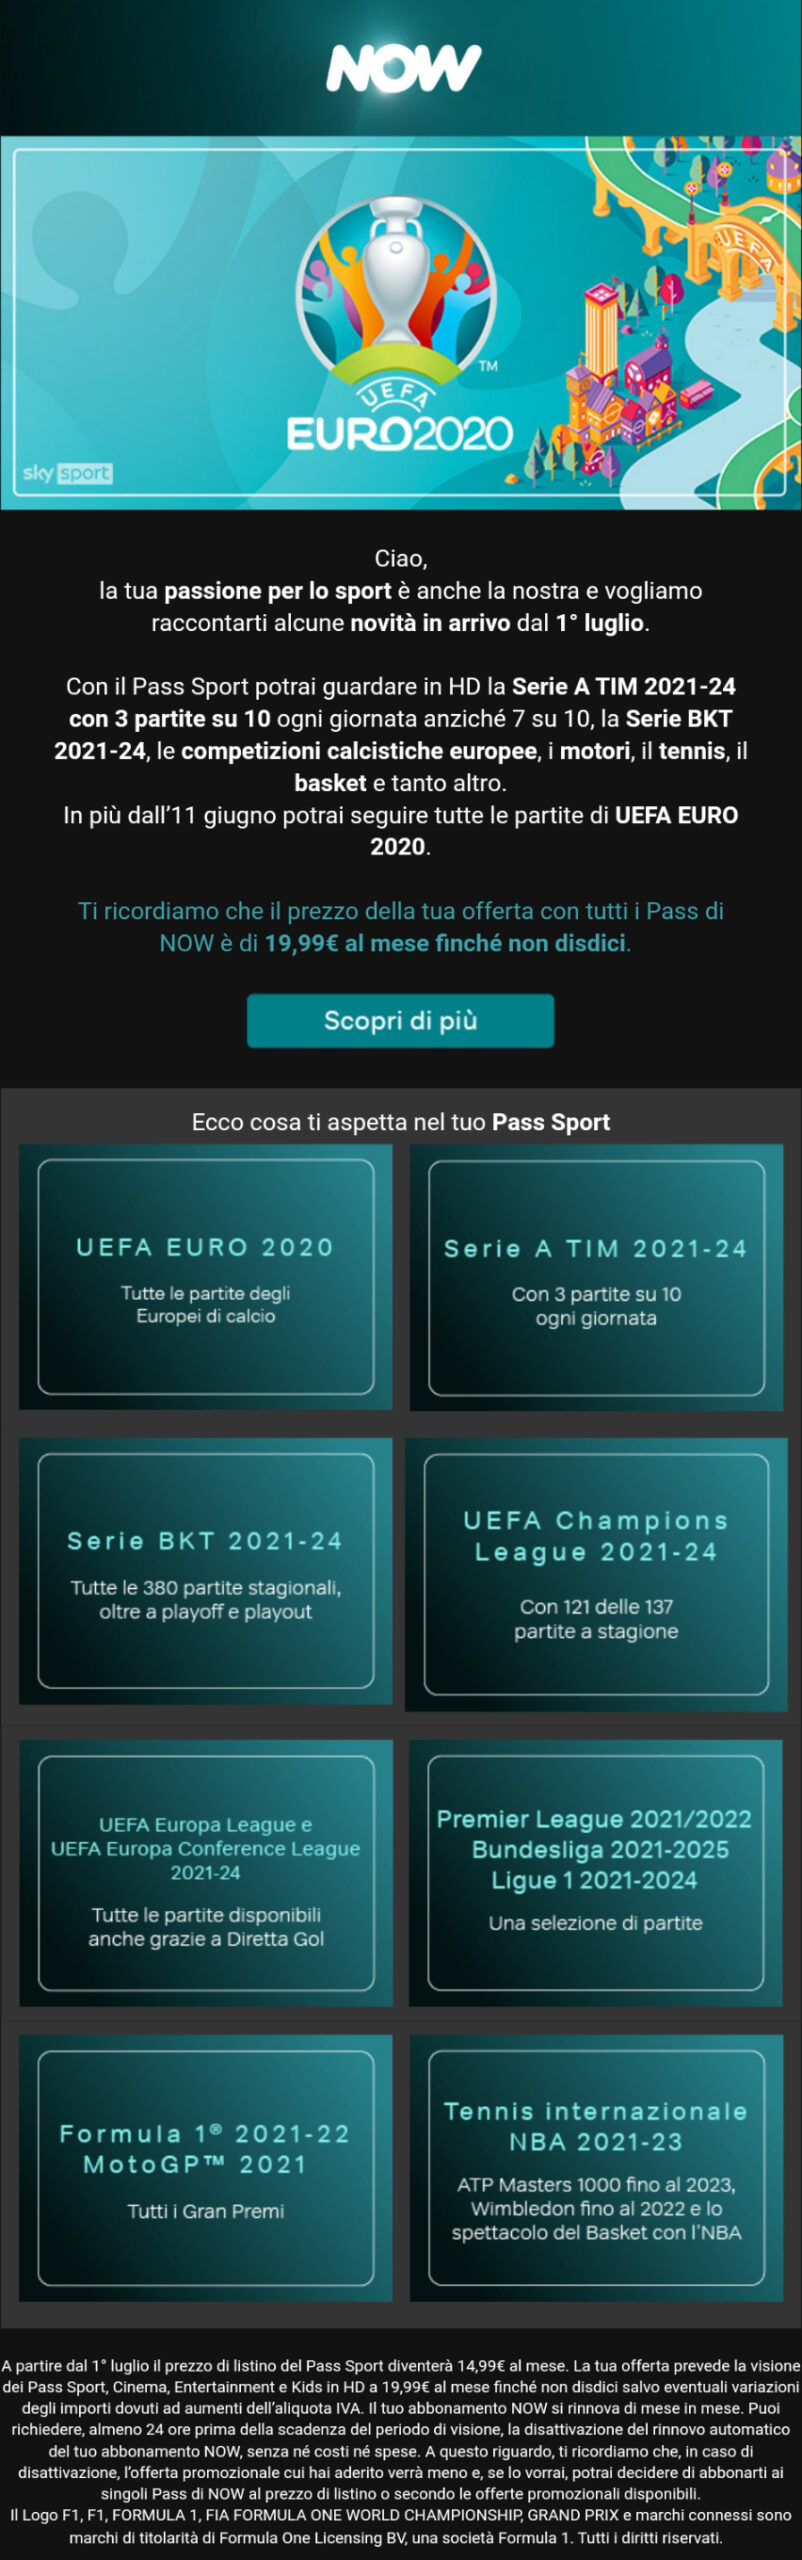 Esempio di email che NOW ha inviato ai clienti con attivo Full a 19,99 euro al mese, comunicando il nuovo prezzo del Pass Sport di 14,99 euro al mese da Luglio 2021